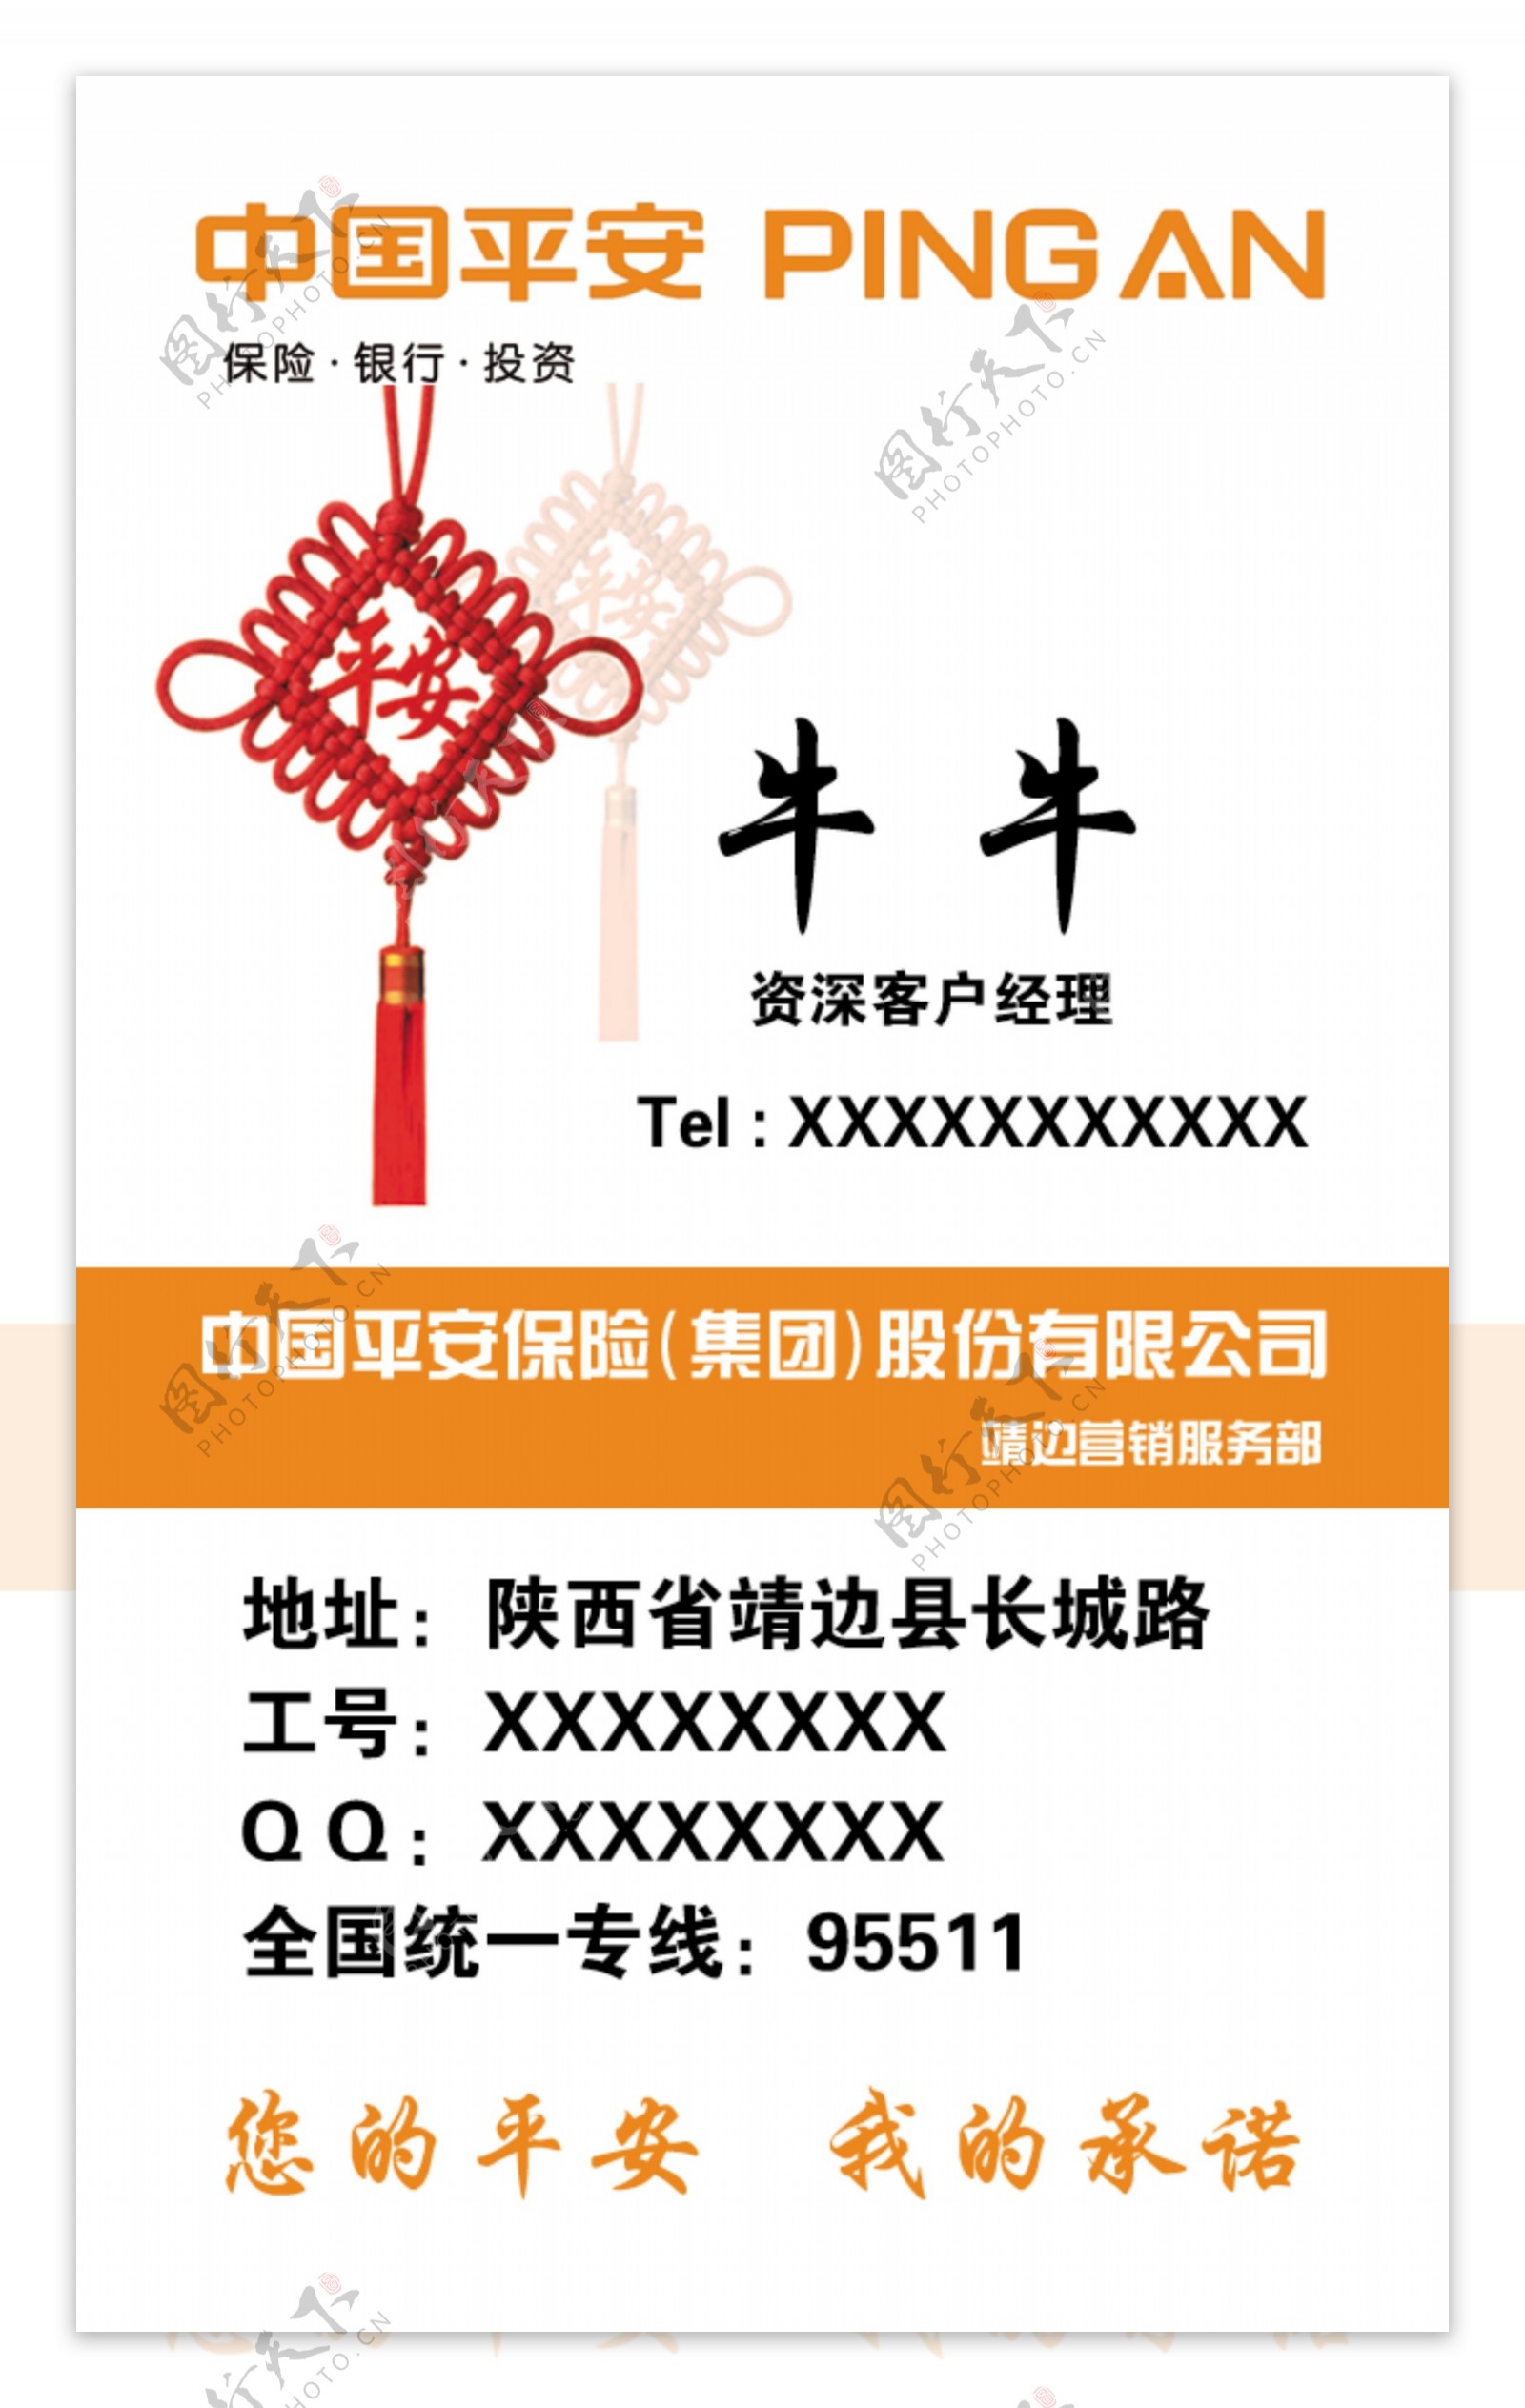 中国平安名片素材图片下载-素材编号03999460-素材天下图库